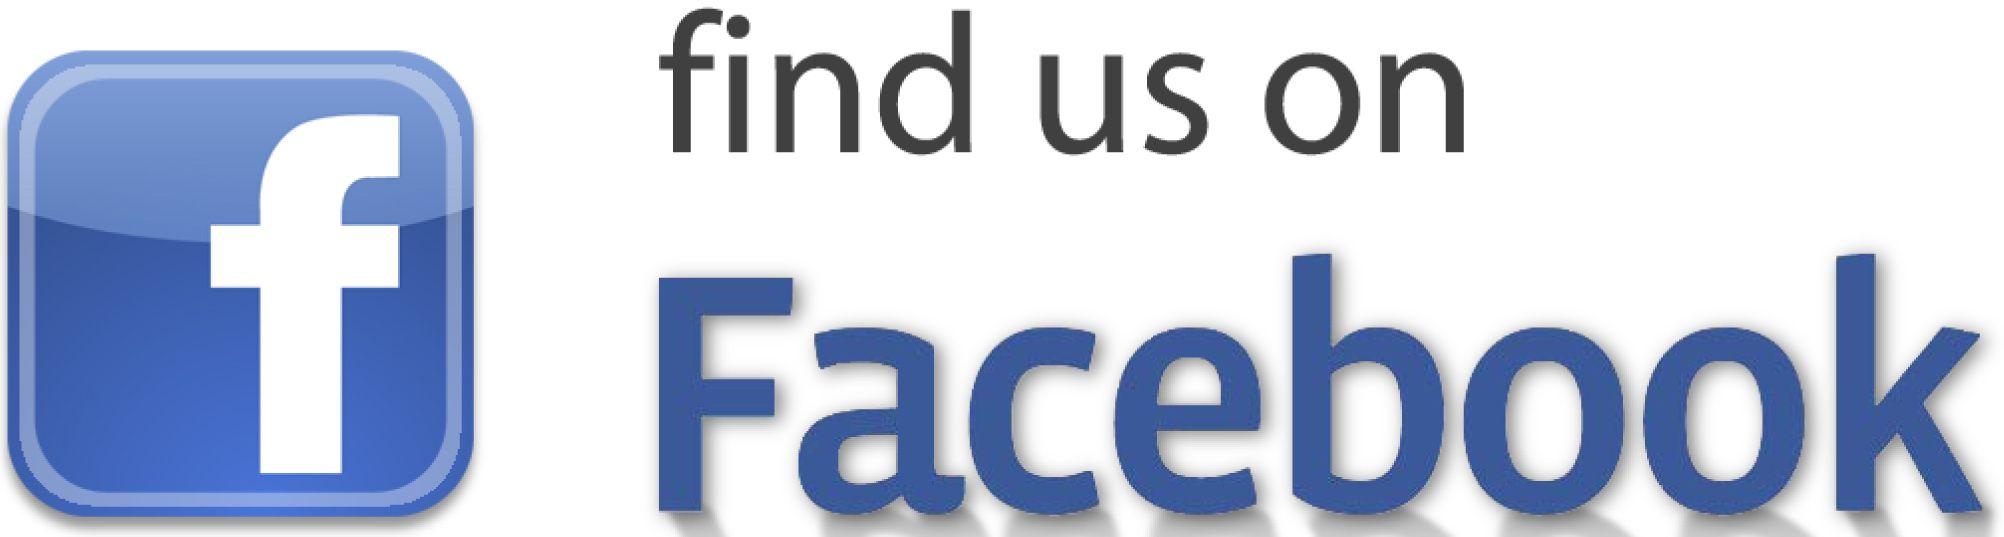 Find Us On Facebook Logo - Facebook Logo 001